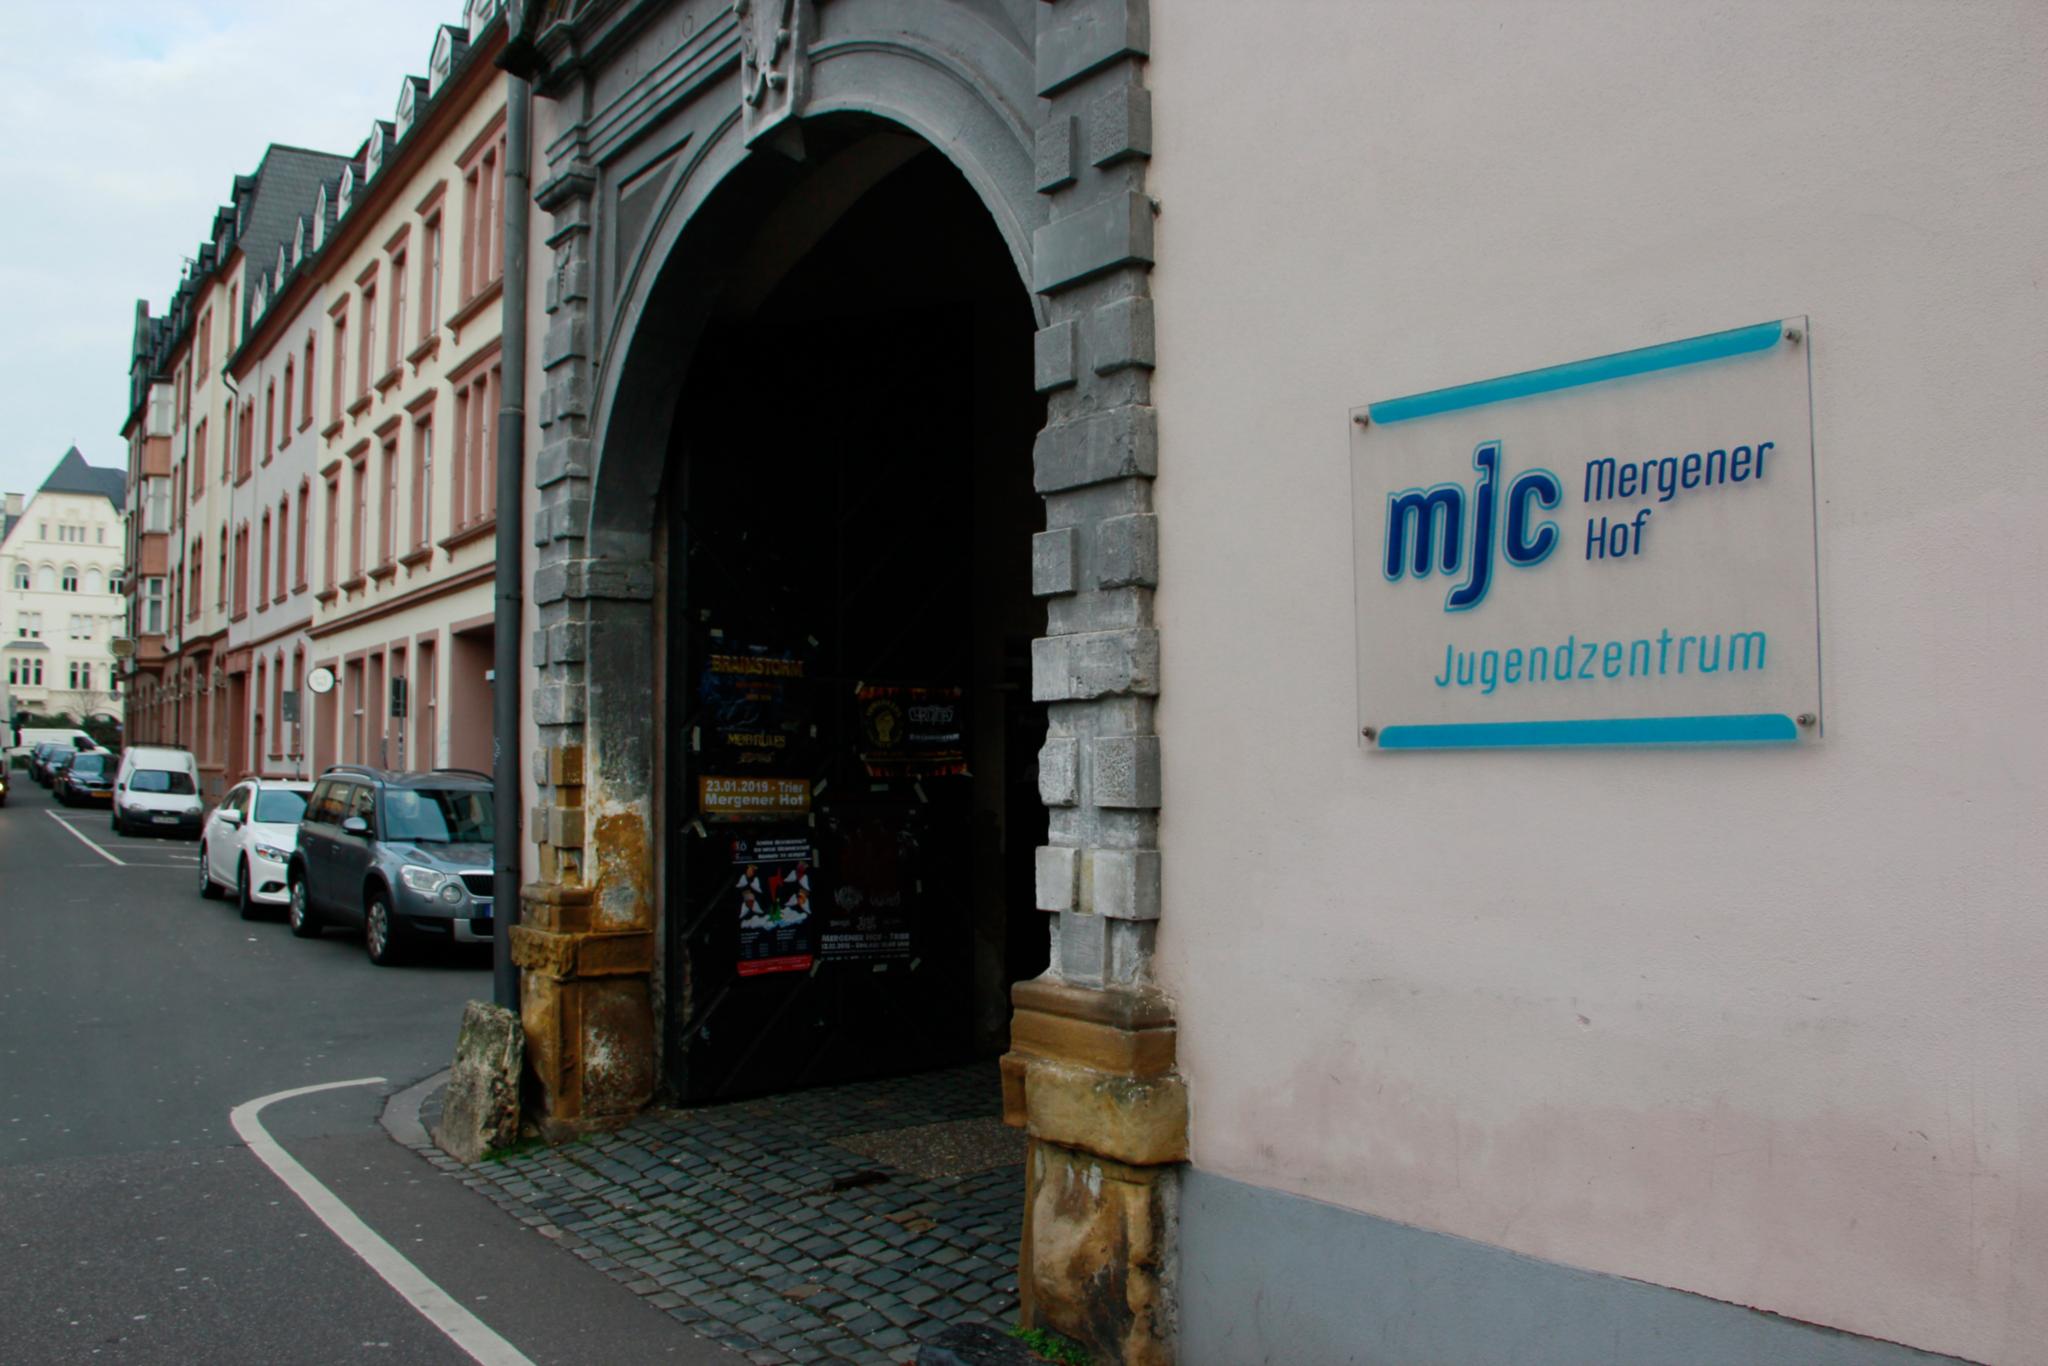 Eingang zur MJC / Jugendzentrum Mergener Hof